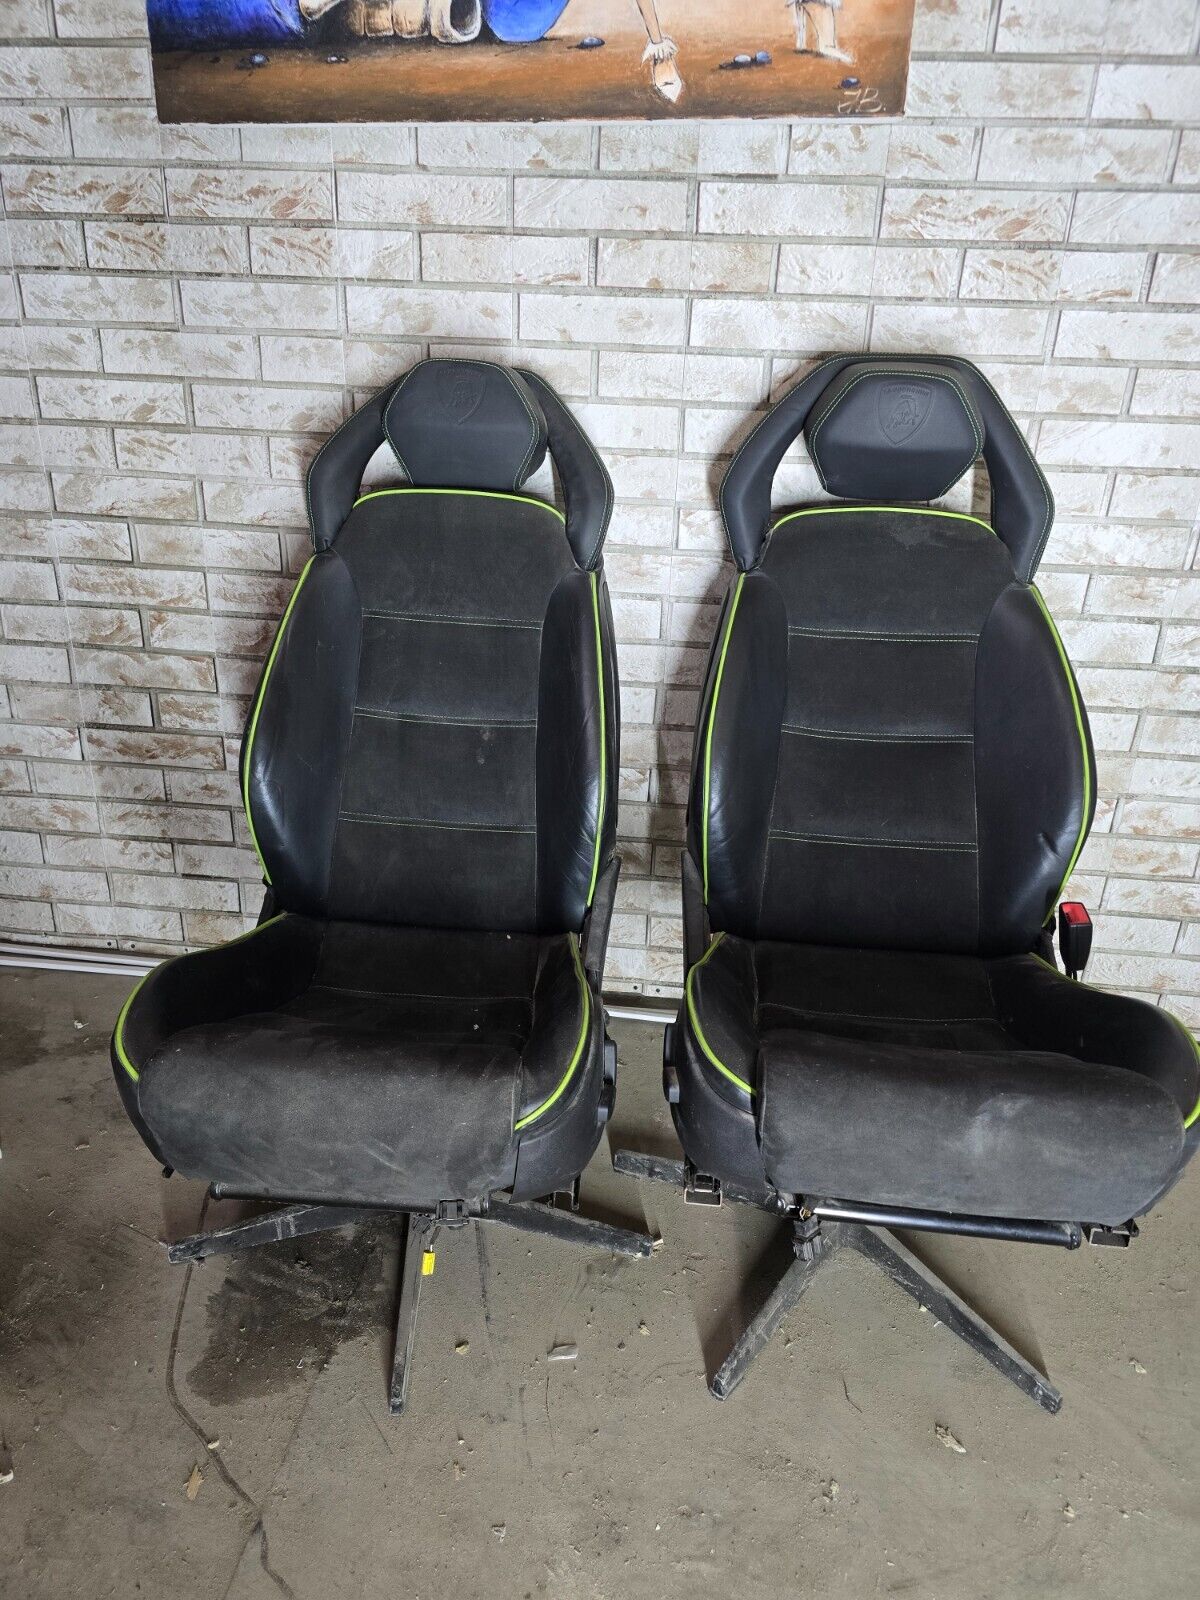 Lamborghini Gallardo Seats / Office seats